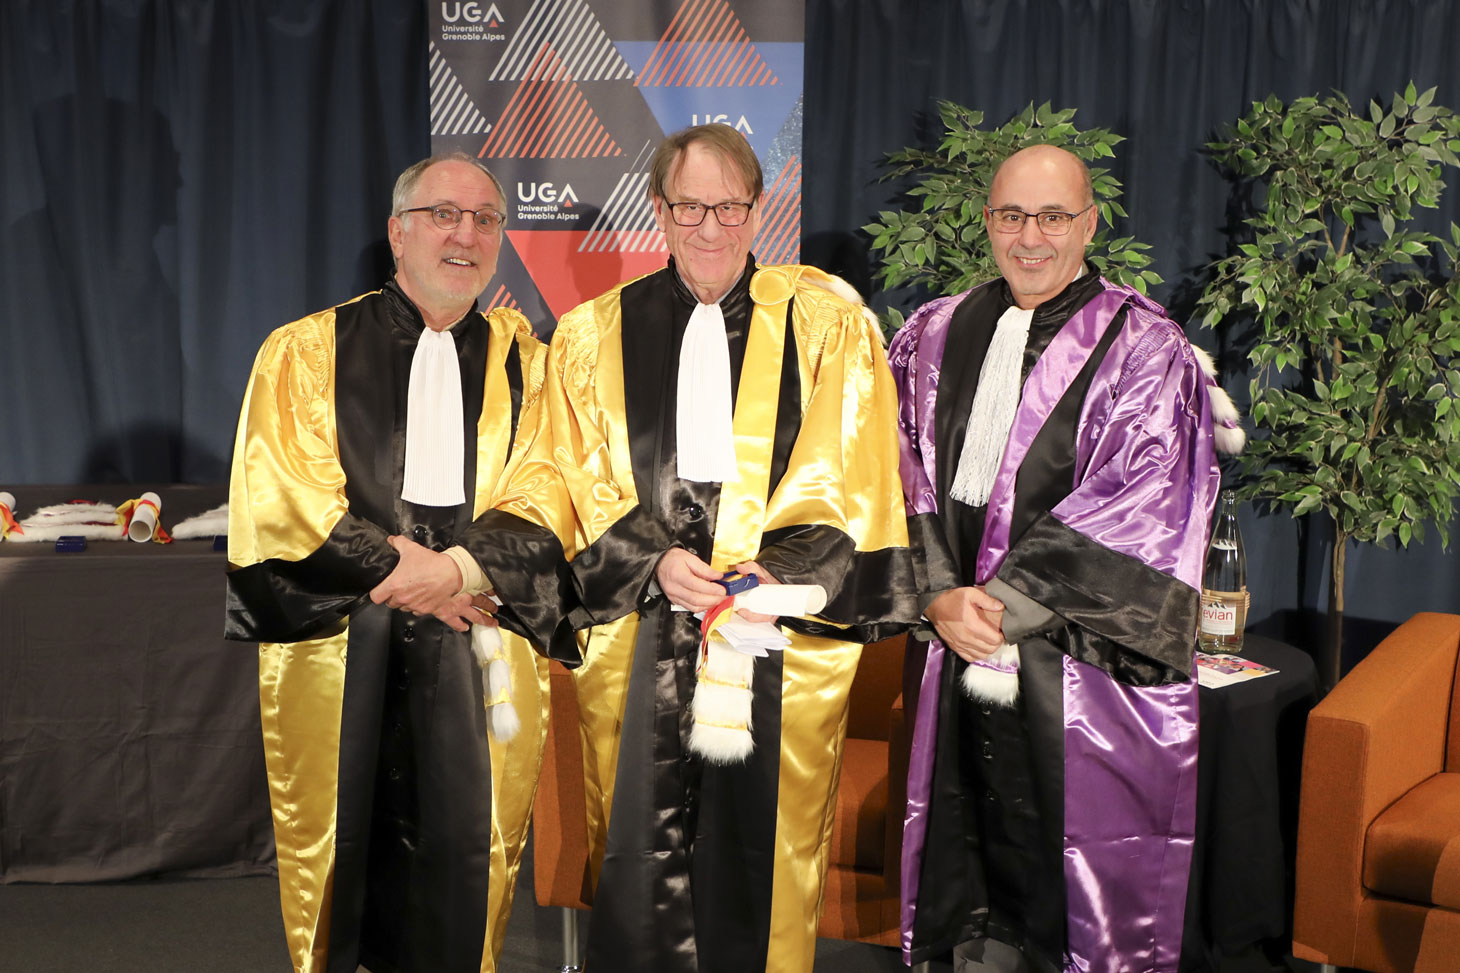 Tim Ingold entouré de son parrain, Jean-Paul Thibaud et du président de l’UGA